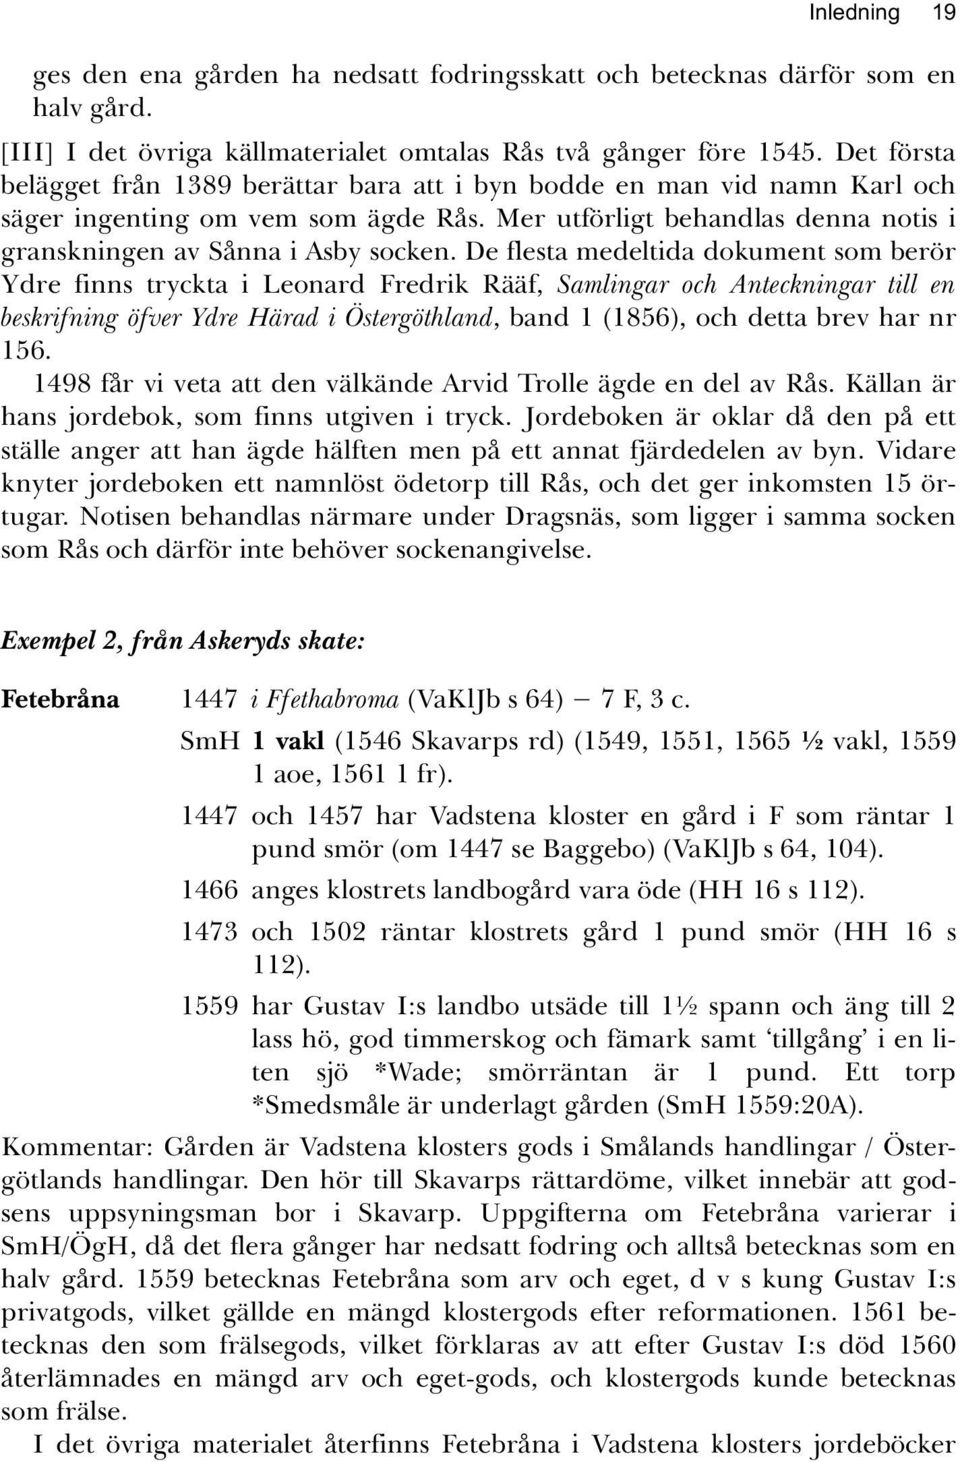 De flesta medeltida dokument som berör Ydre finns tryckta i Leonard Fredrik Rääf, Samlingar och Anteckningar till en beskrifning öfver Ydre Härad i Östergöthland, band 1 (1856), och detta brev har nr